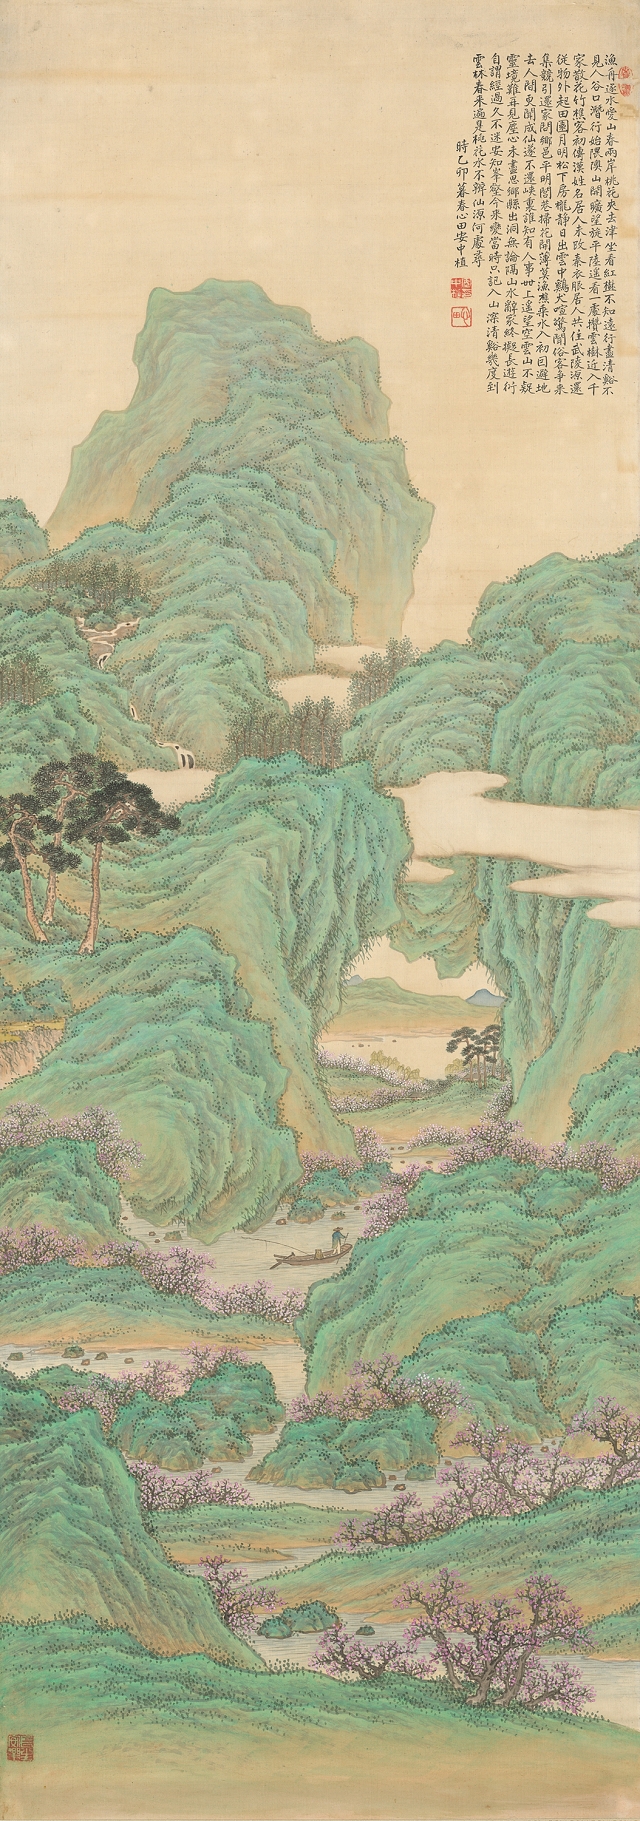 안중식, ‘도원행주도’, 1915년, 비단에 채색, 143.5×50.7㎝, 국립중앙